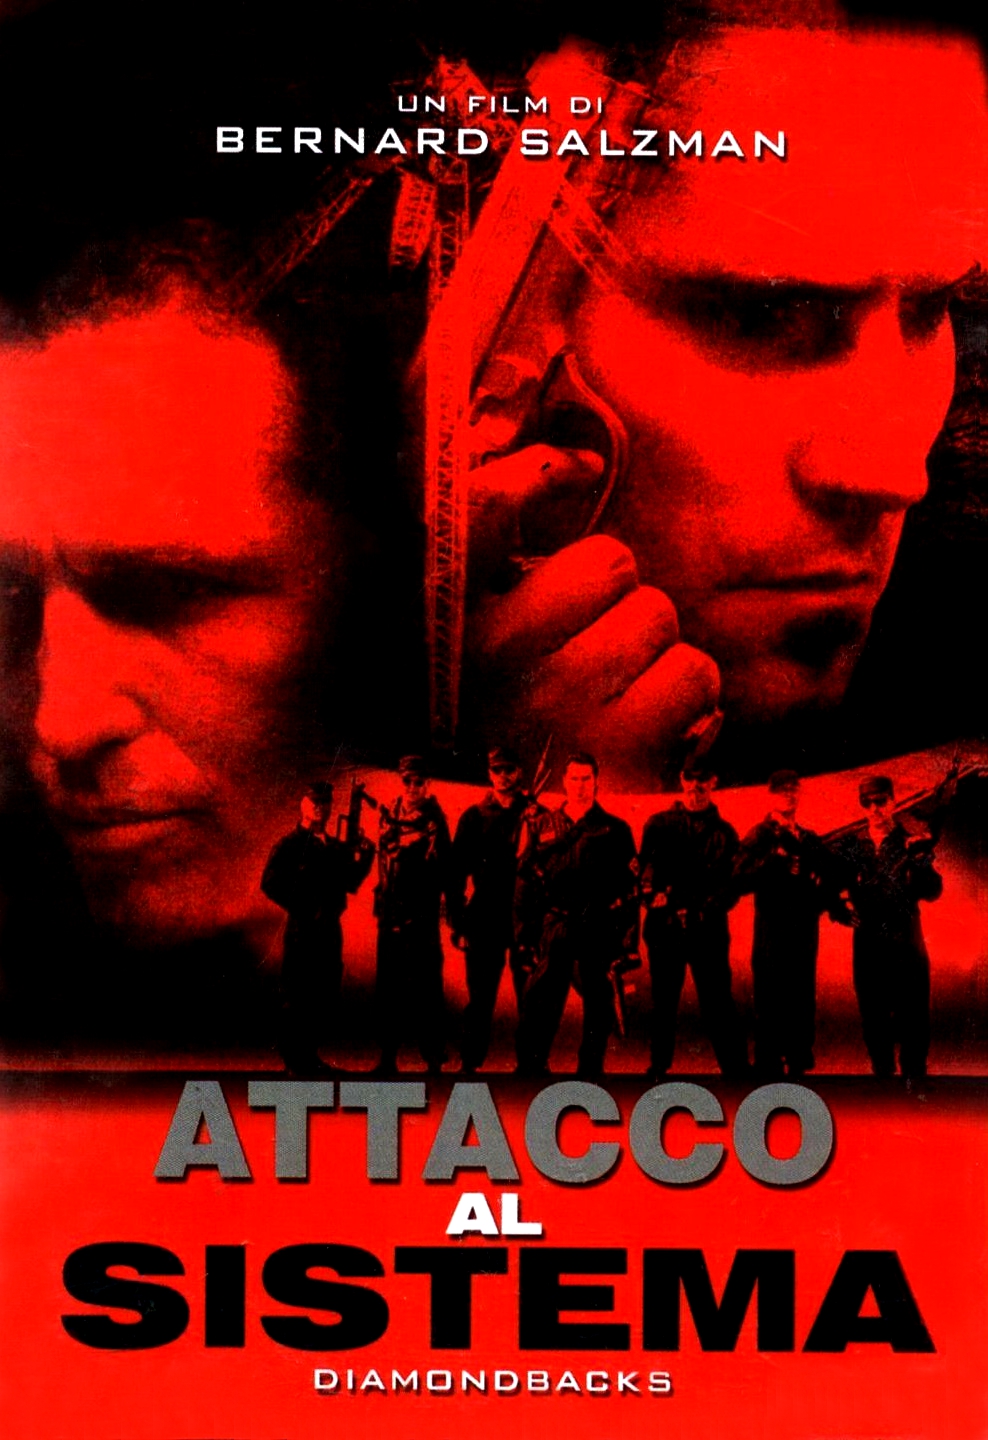 Attacco al sistema (1998)